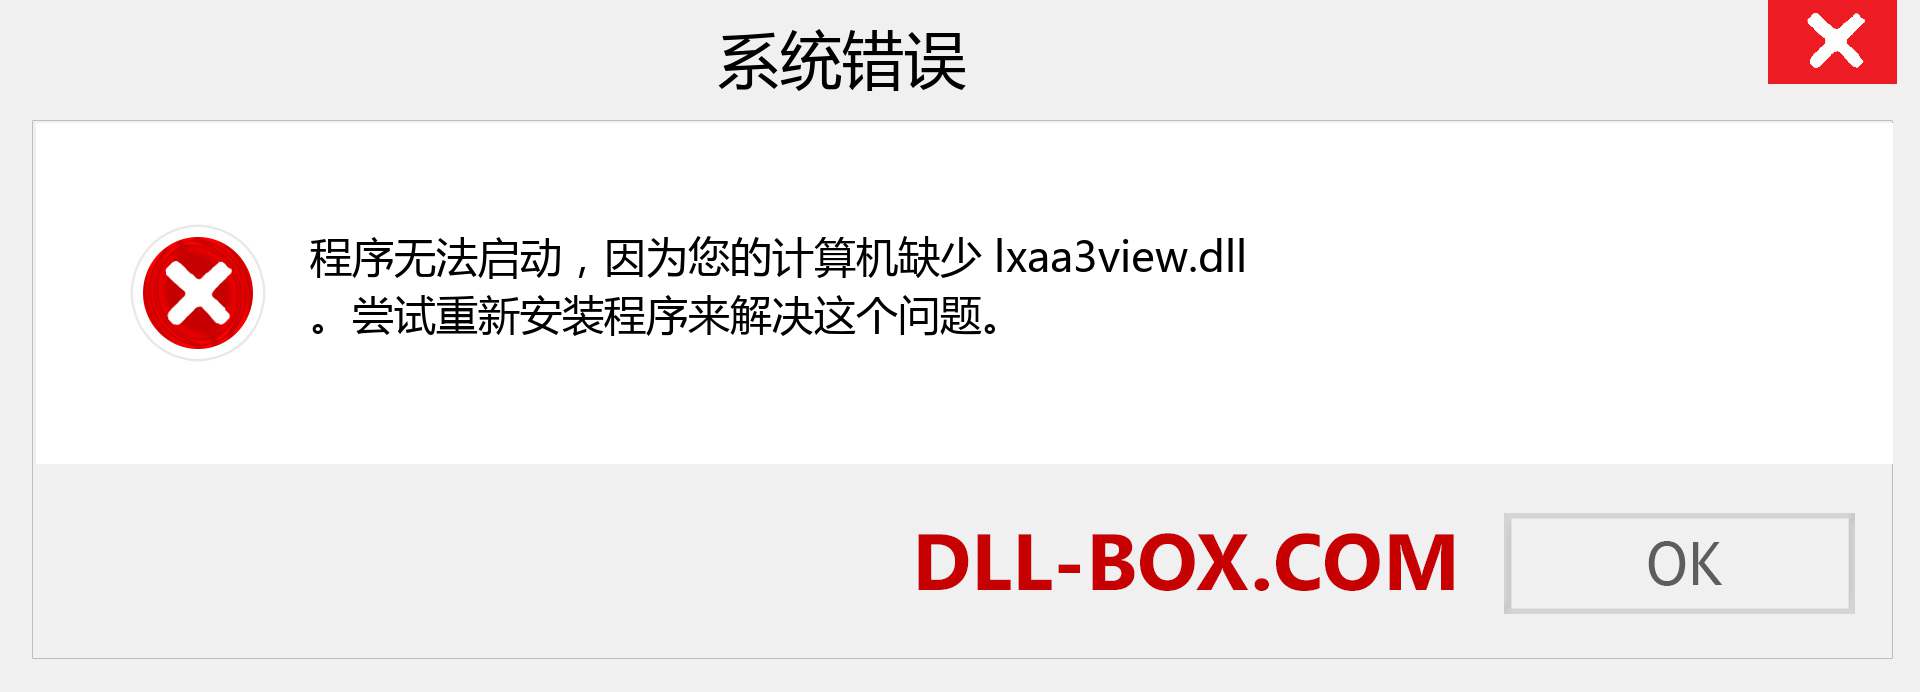 lxaa3view.dll 文件丢失？。 适用于 Windows 7、8、10 的下载 - 修复 Windows、照片、图像上的 lxaa3view dll 丢失错误